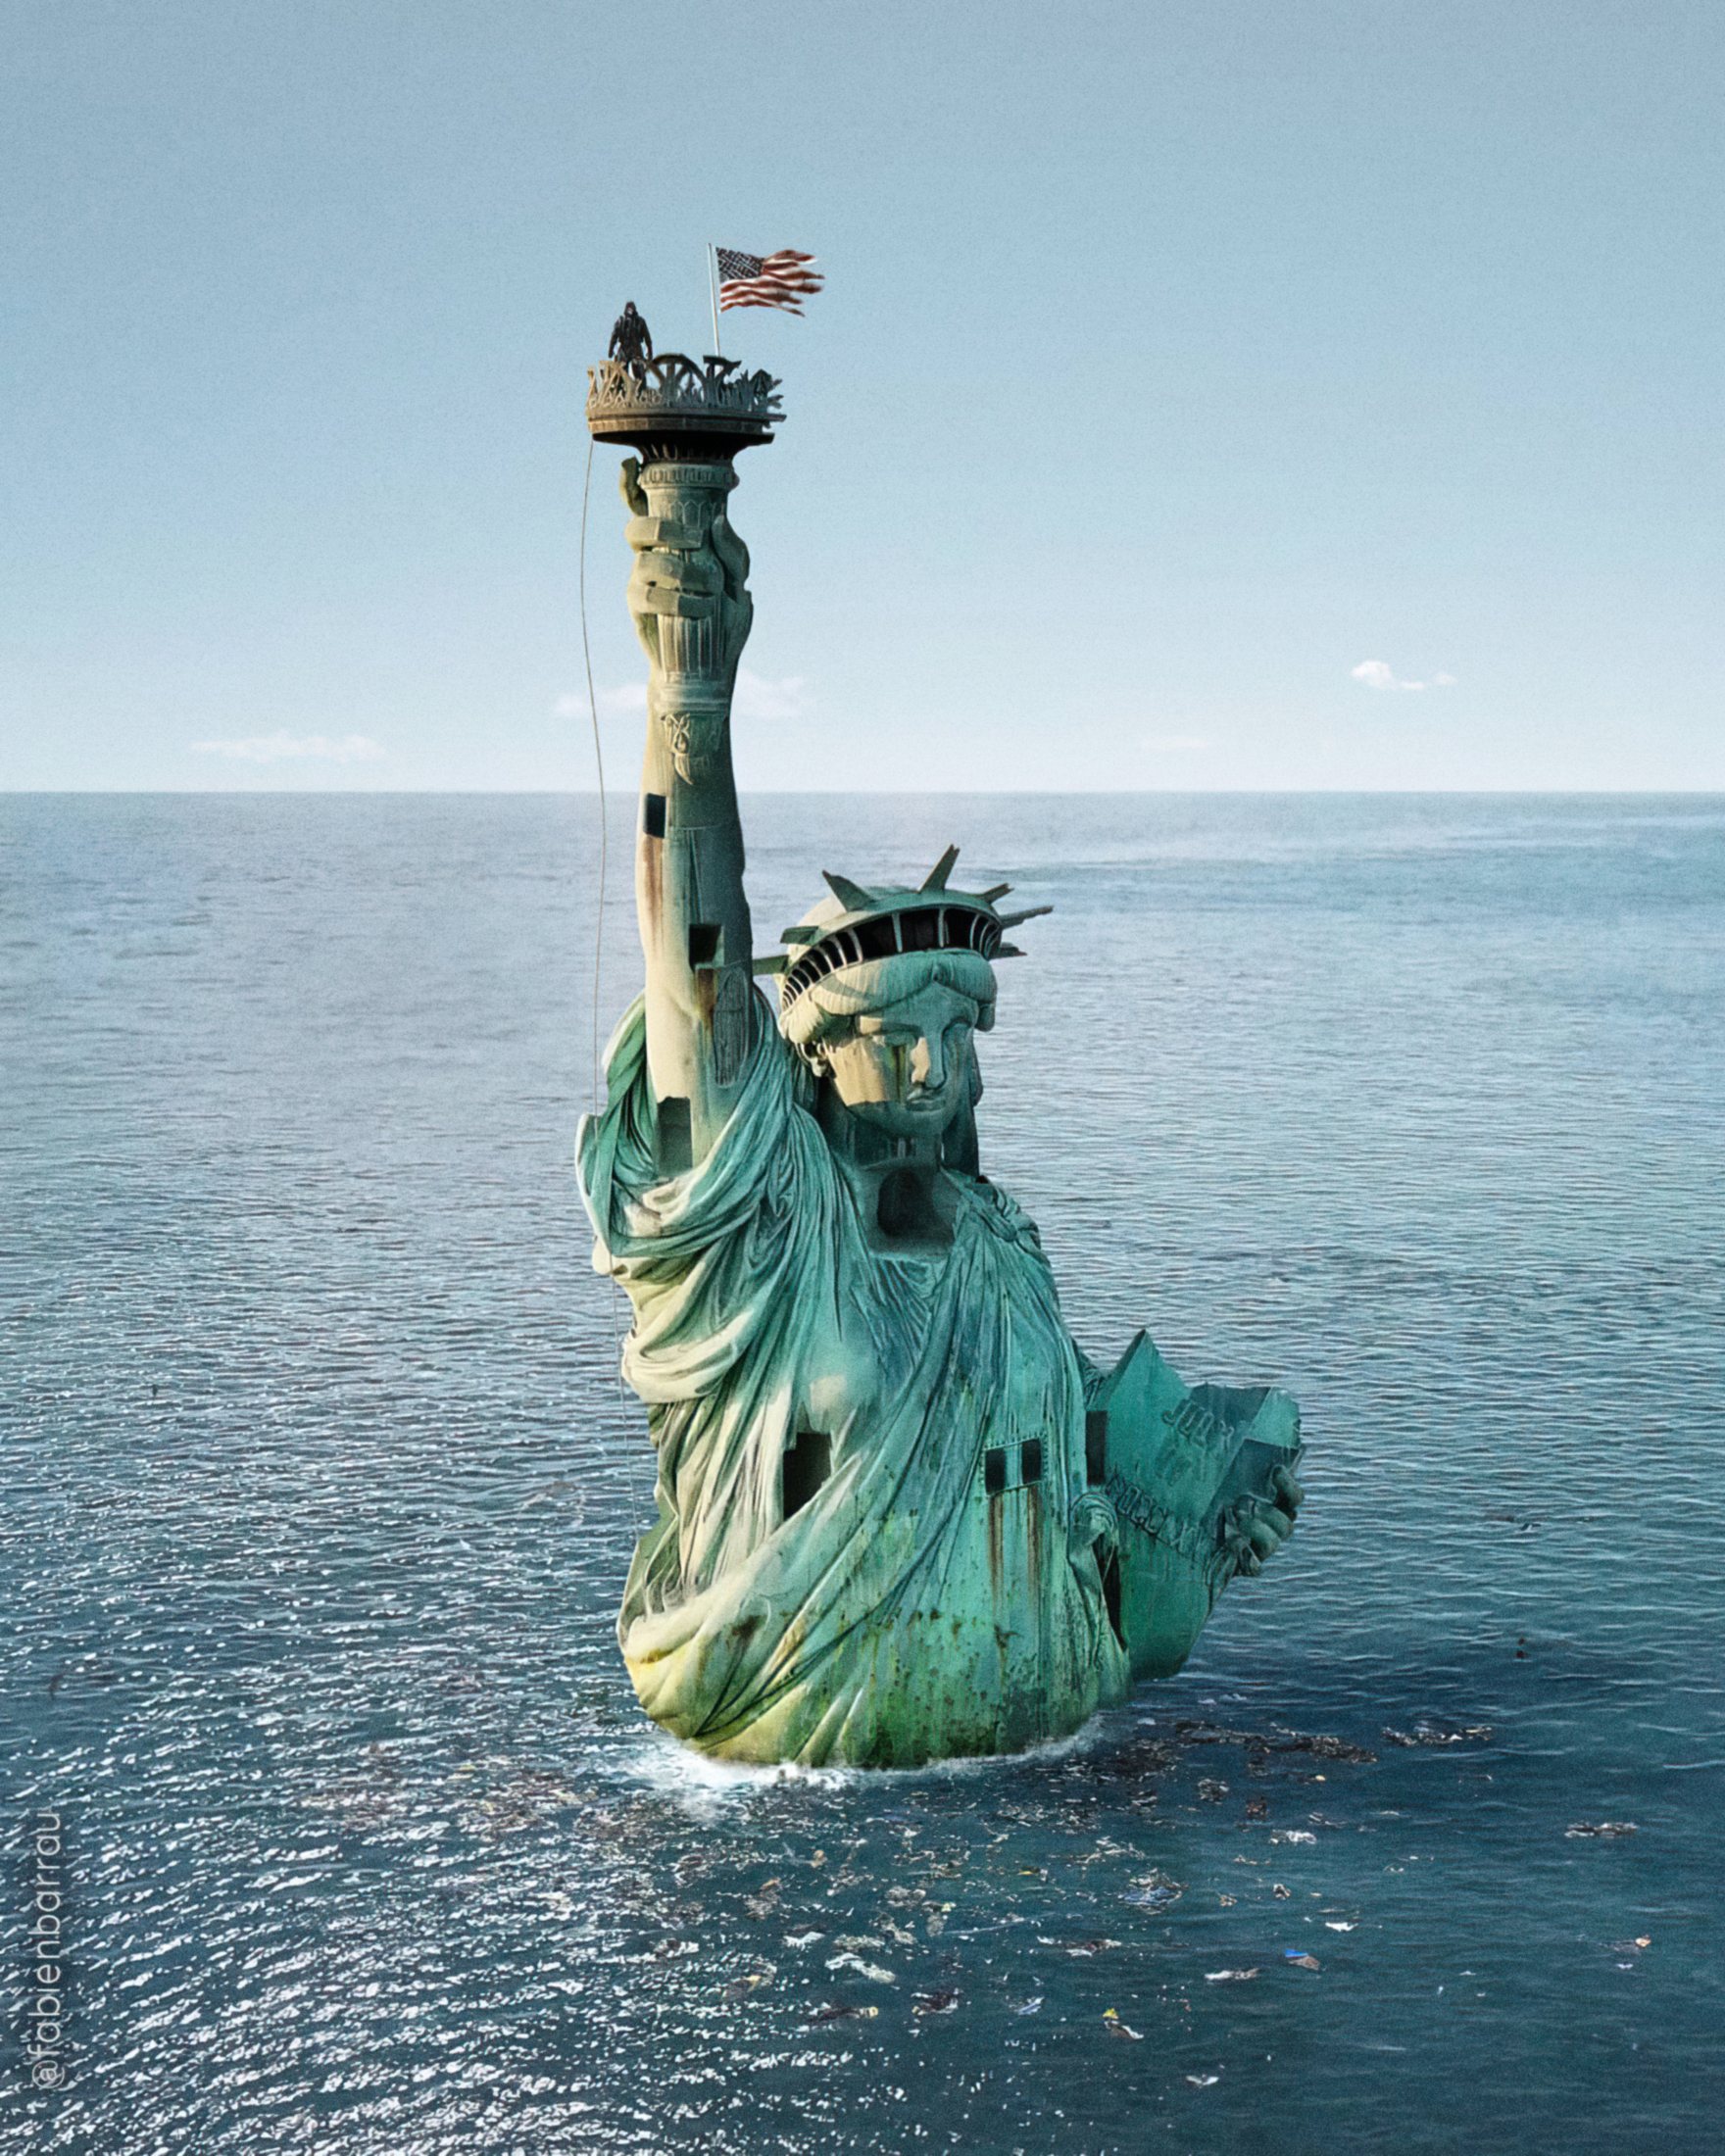 Imagens de Fabien Barrau que mostram impactos do aquecimento global